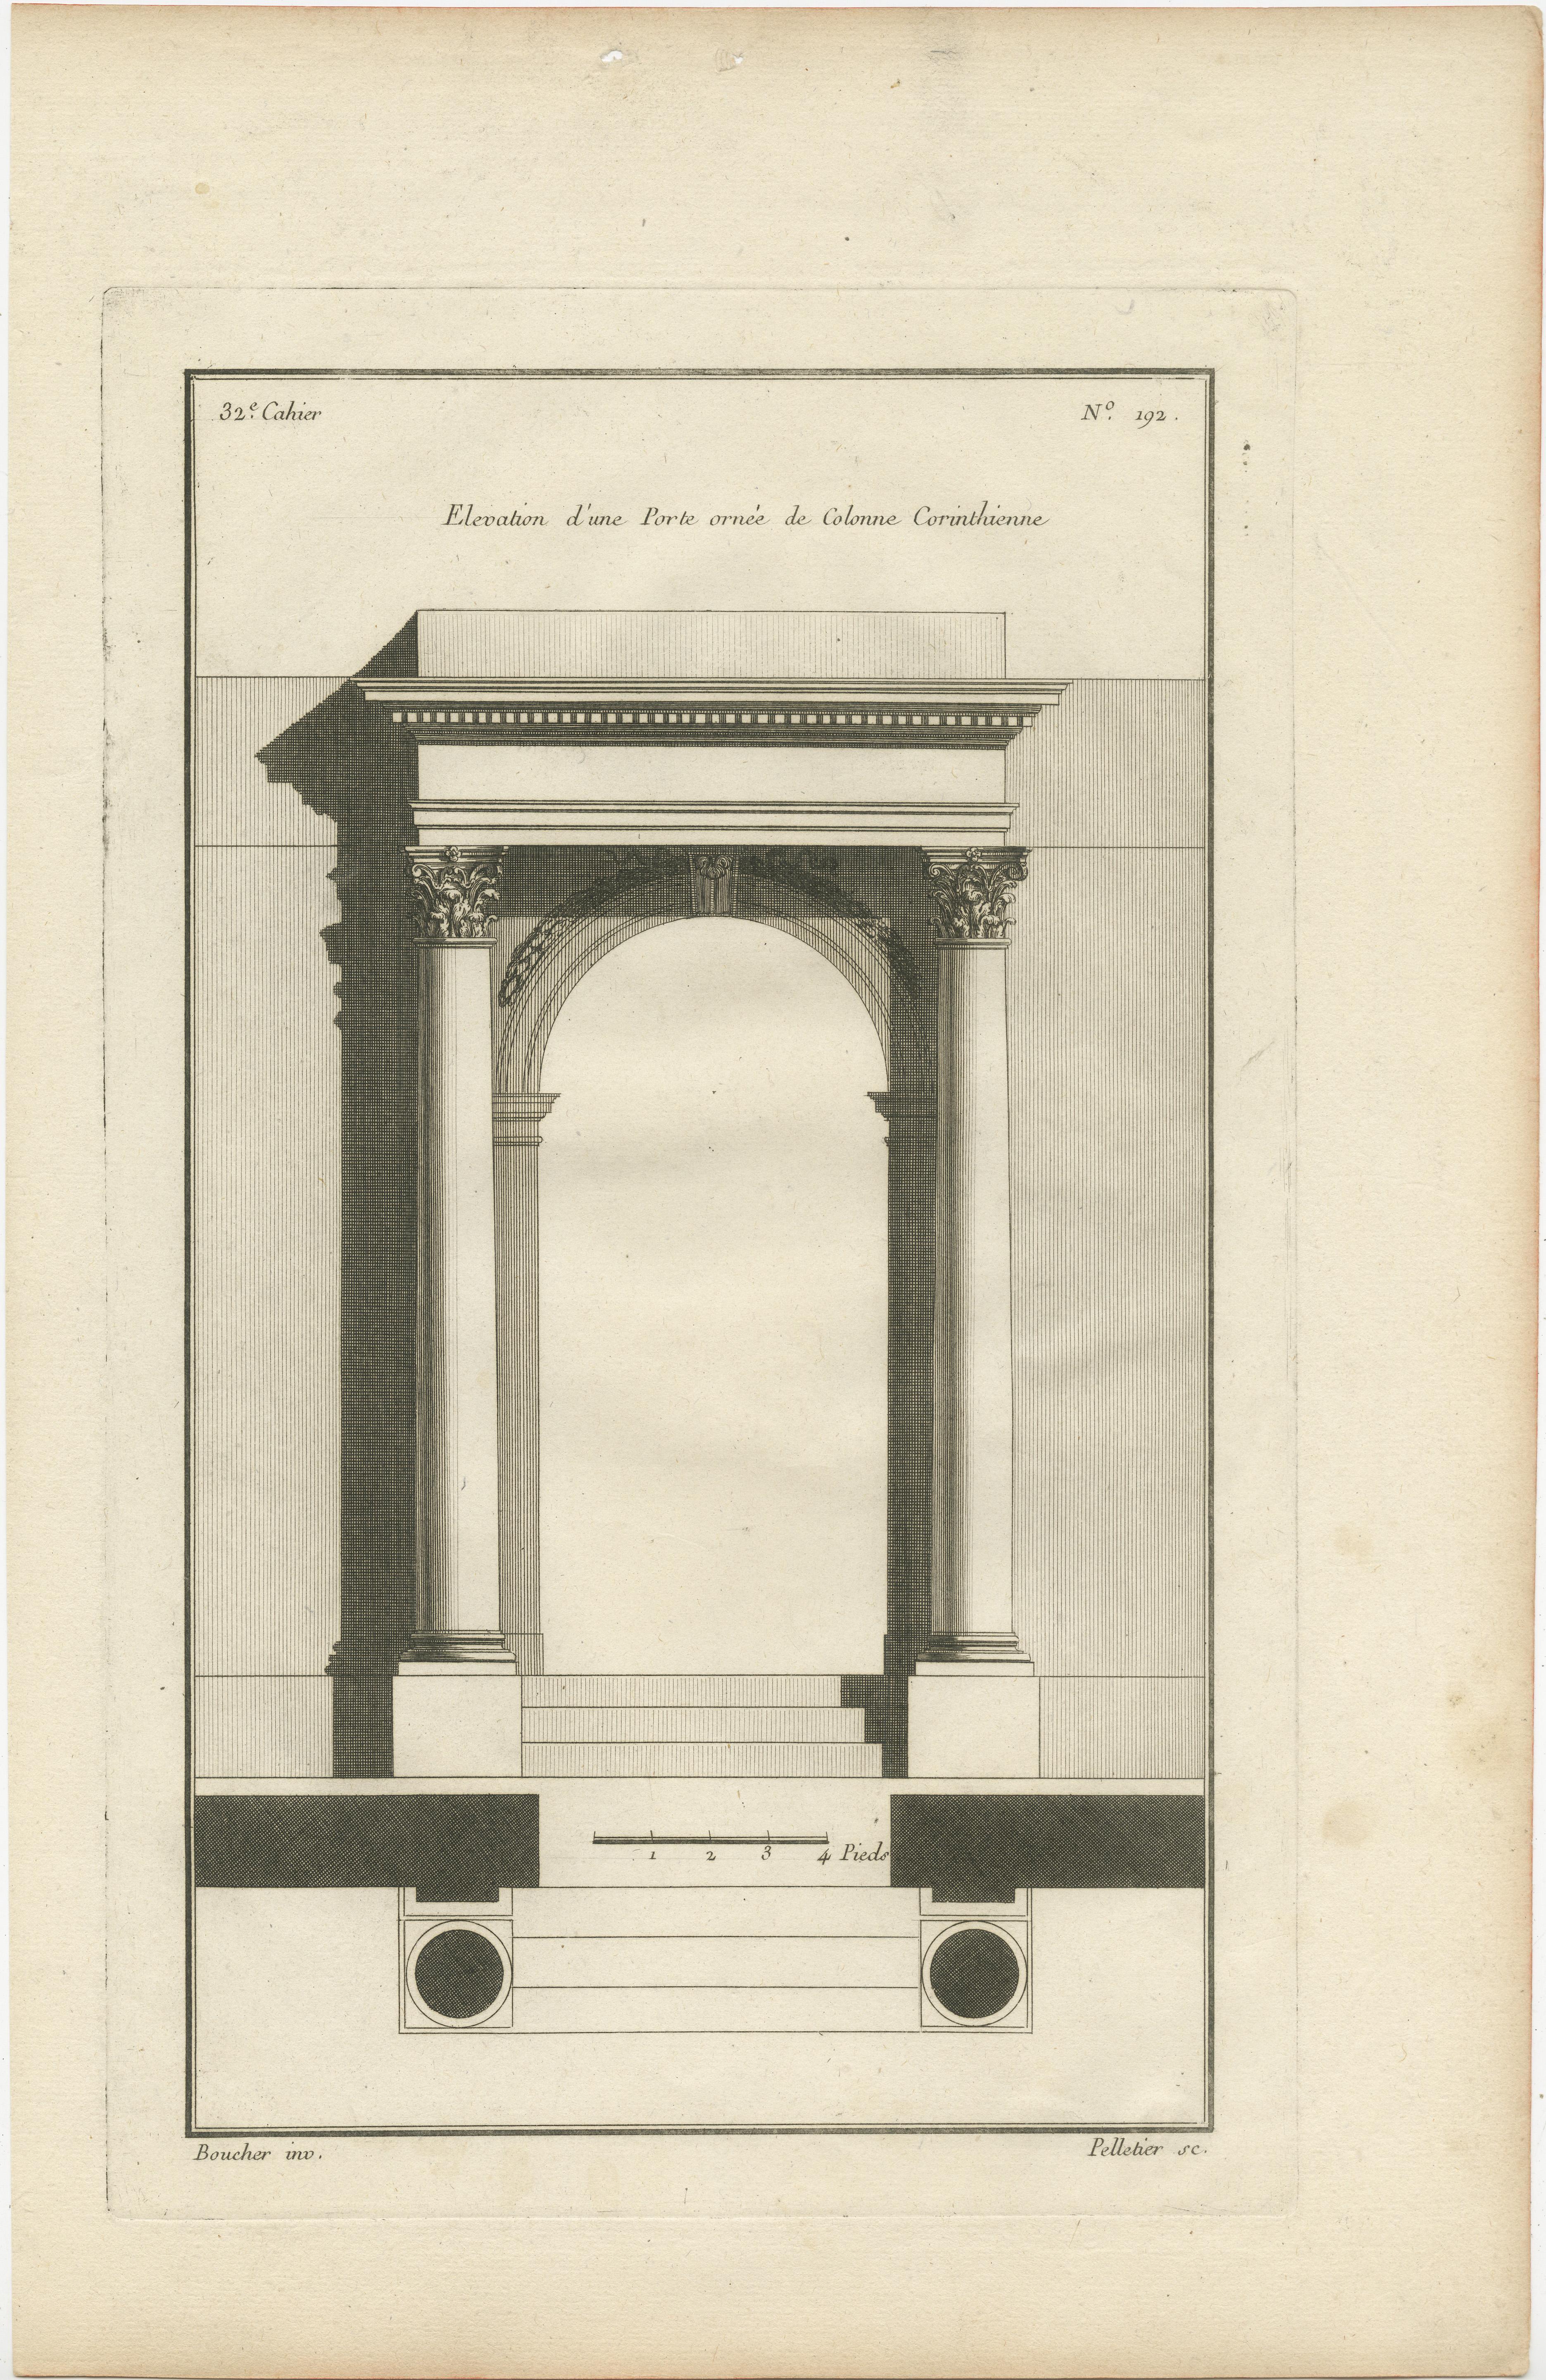 Bei diesen Drucken handelt es sich um detaillierte Architekturstiche von Jean-François de Neufforge, die seine akribische Herangehensweise an die klassische Architektur des 18. Jahrhunderts widerspiegeln.

1. Der erste Druck ist eine Ansicht eines